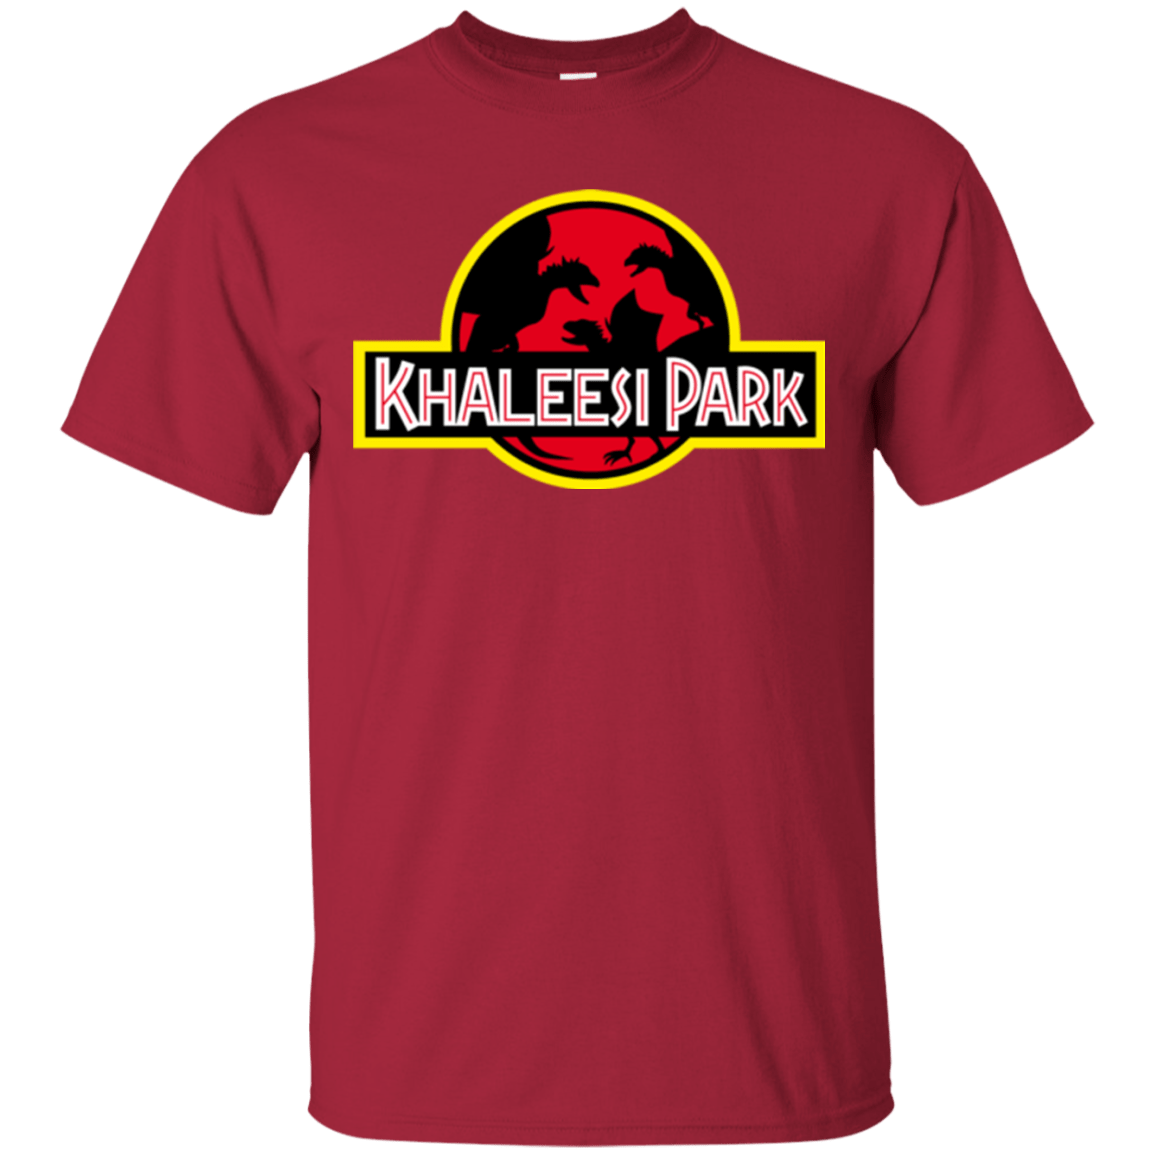 T-Shirts Cardinal / Small Khaleesi Park T-Shirt